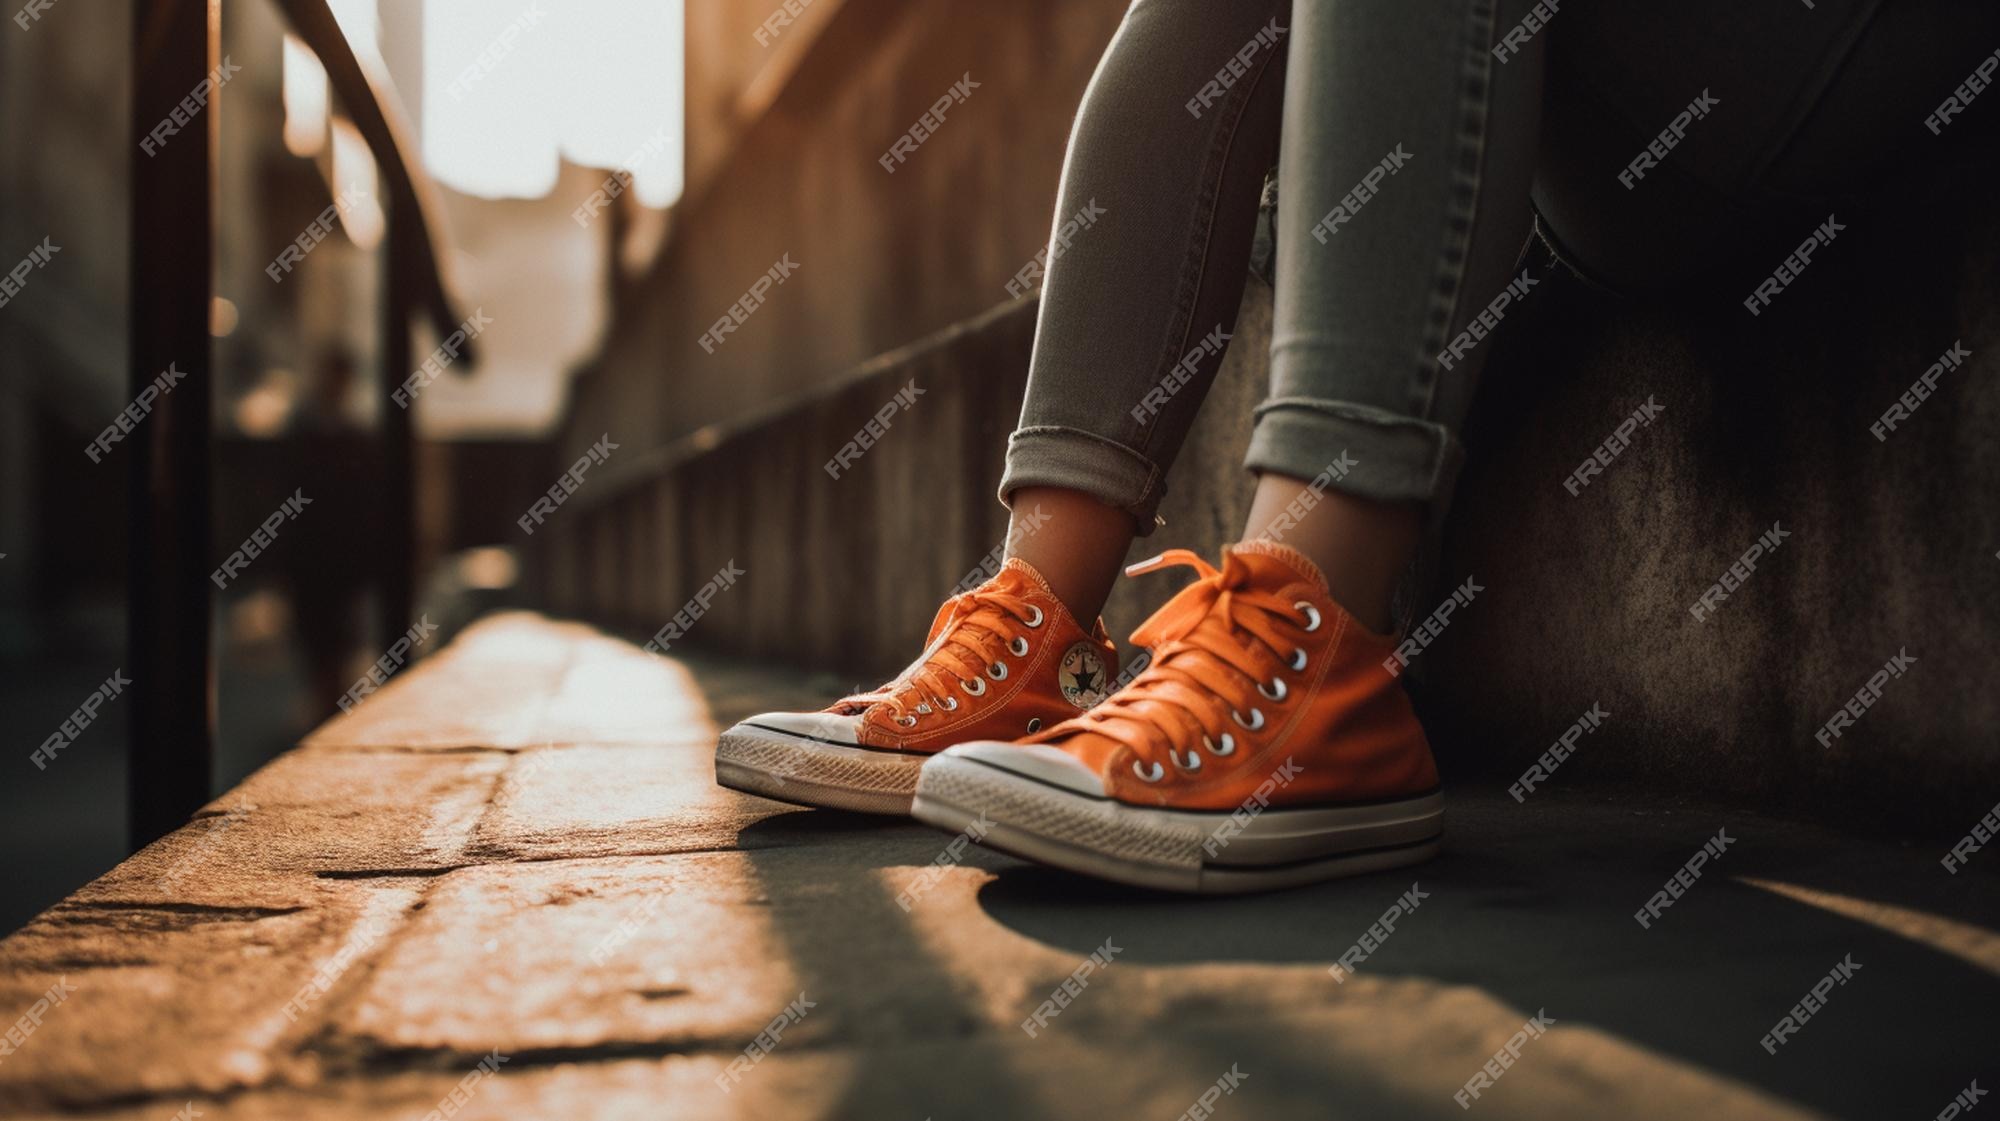 Una con zapatos converse naranjas se sienta en una acera. | Foto Premium